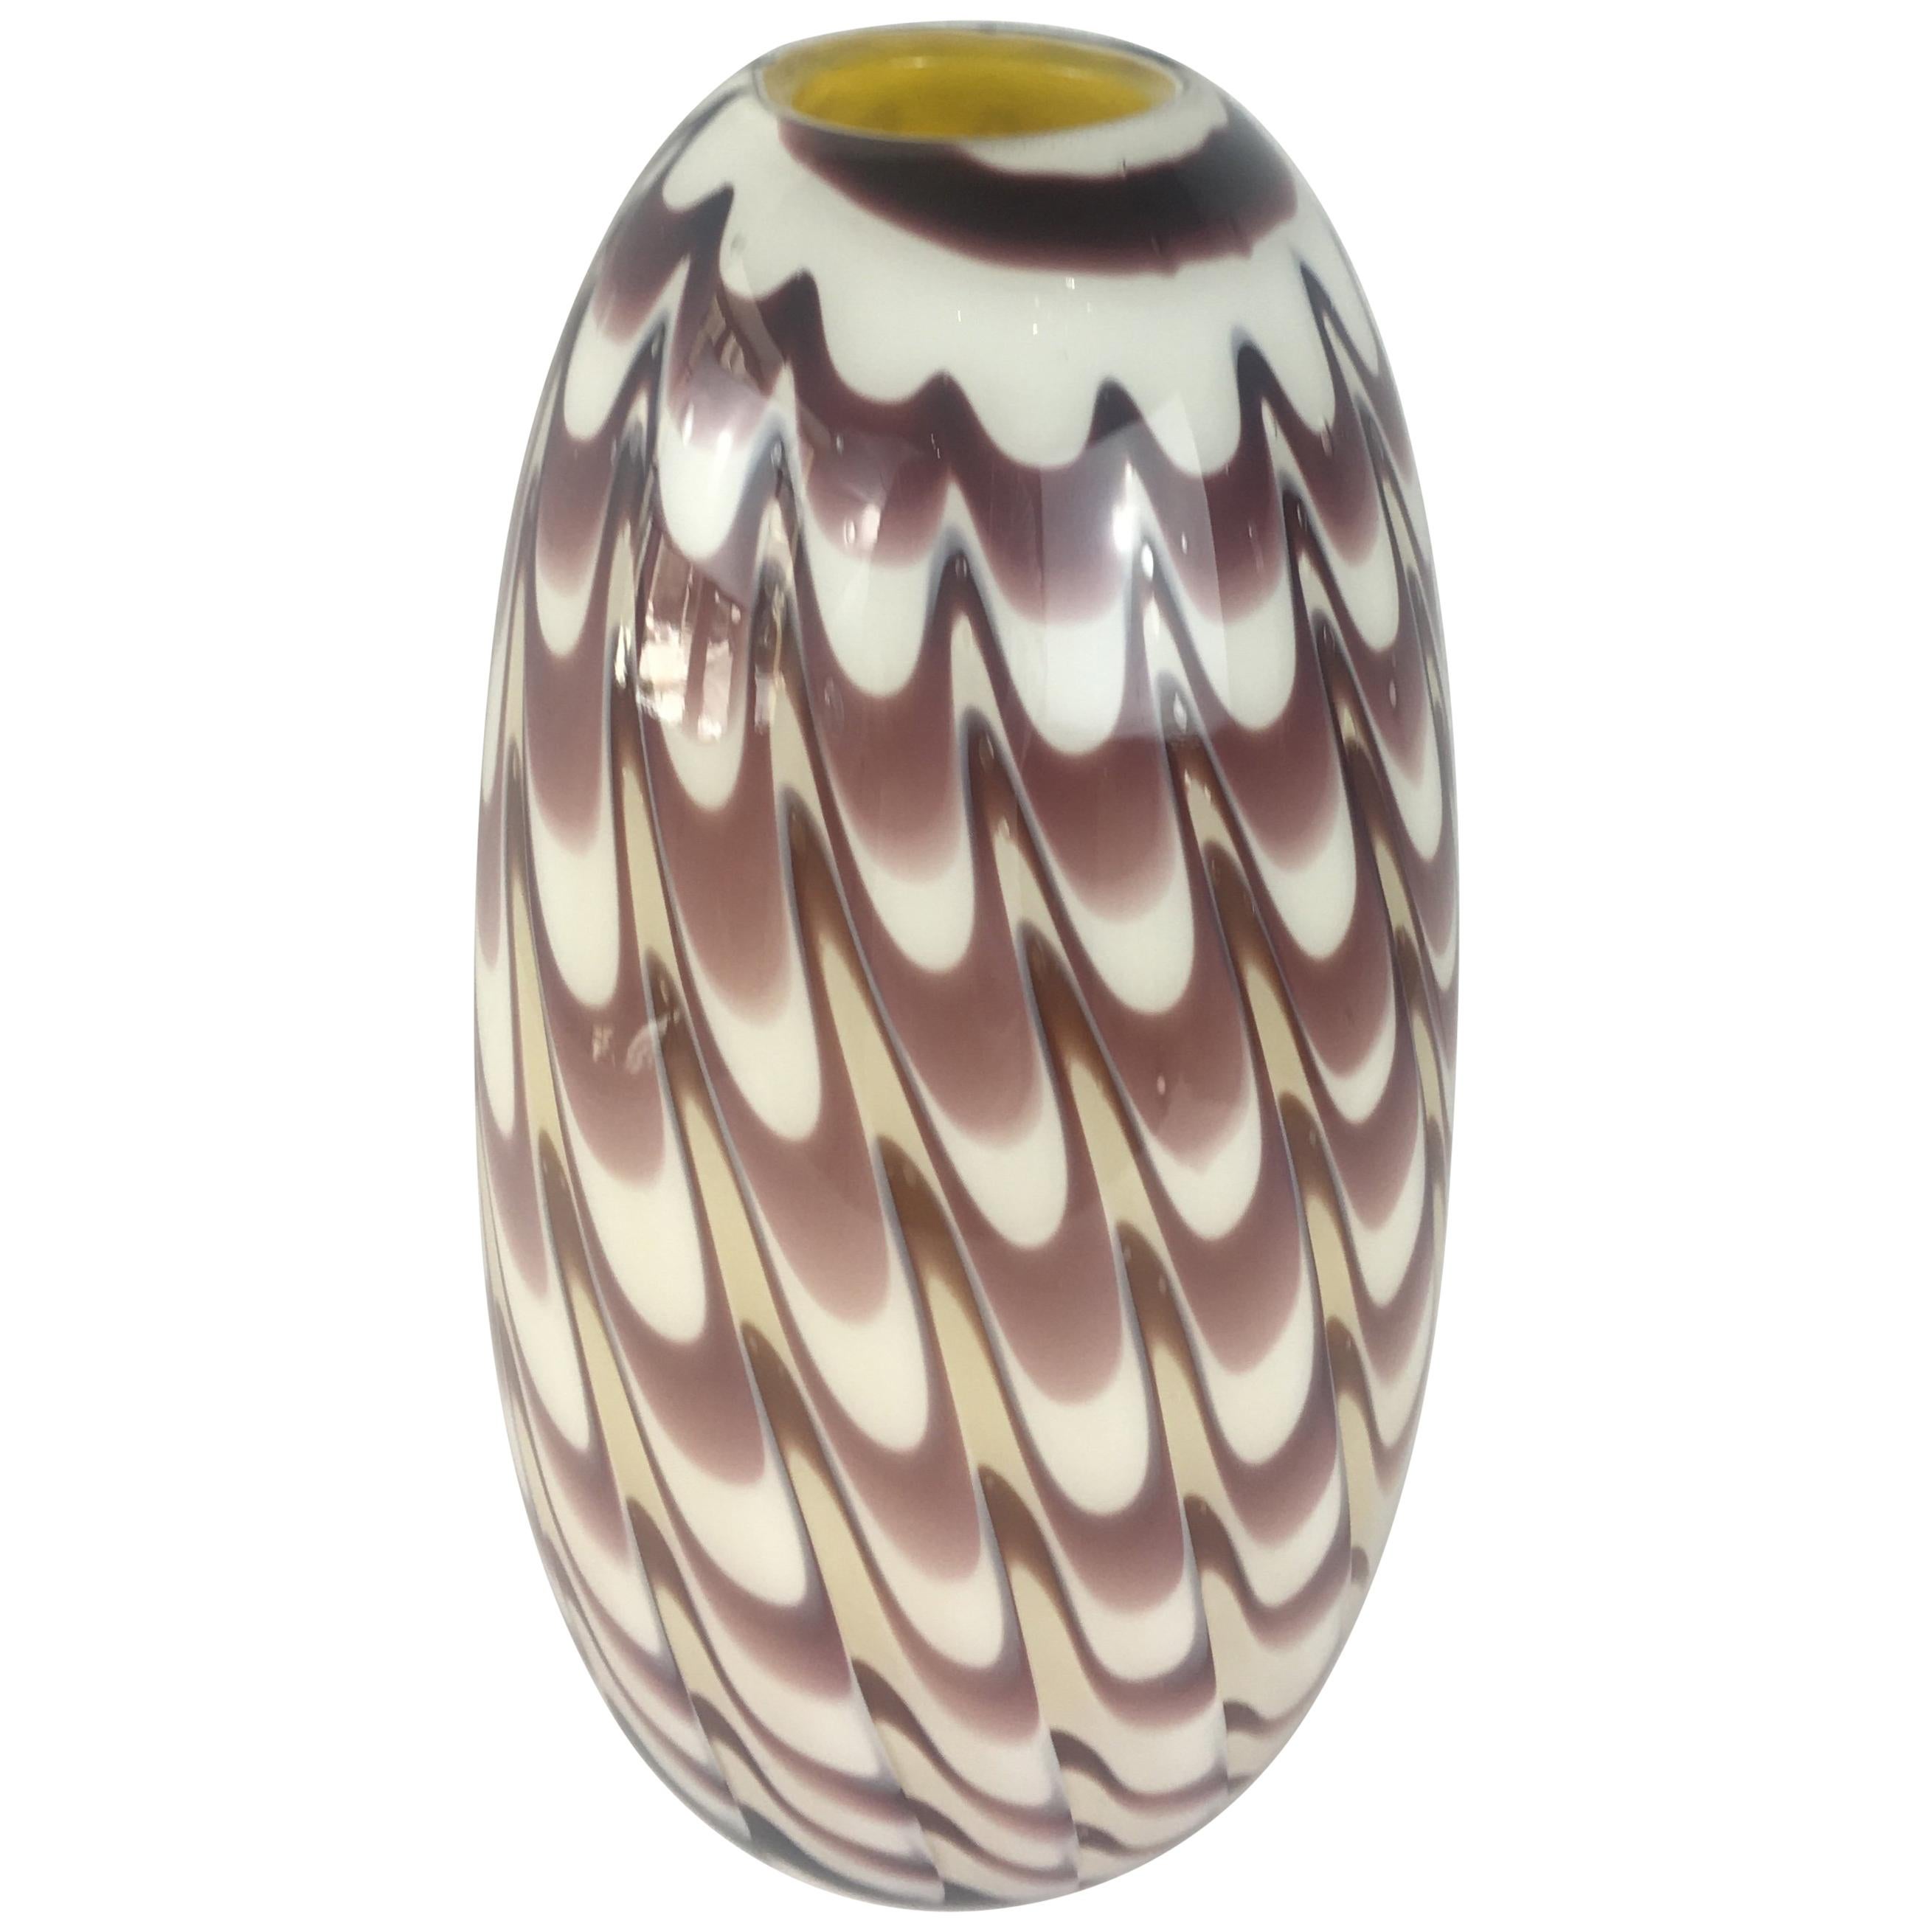 Formia 1970s Fenicio Feather Decorated Purple Brown Murano Art Glass Vase